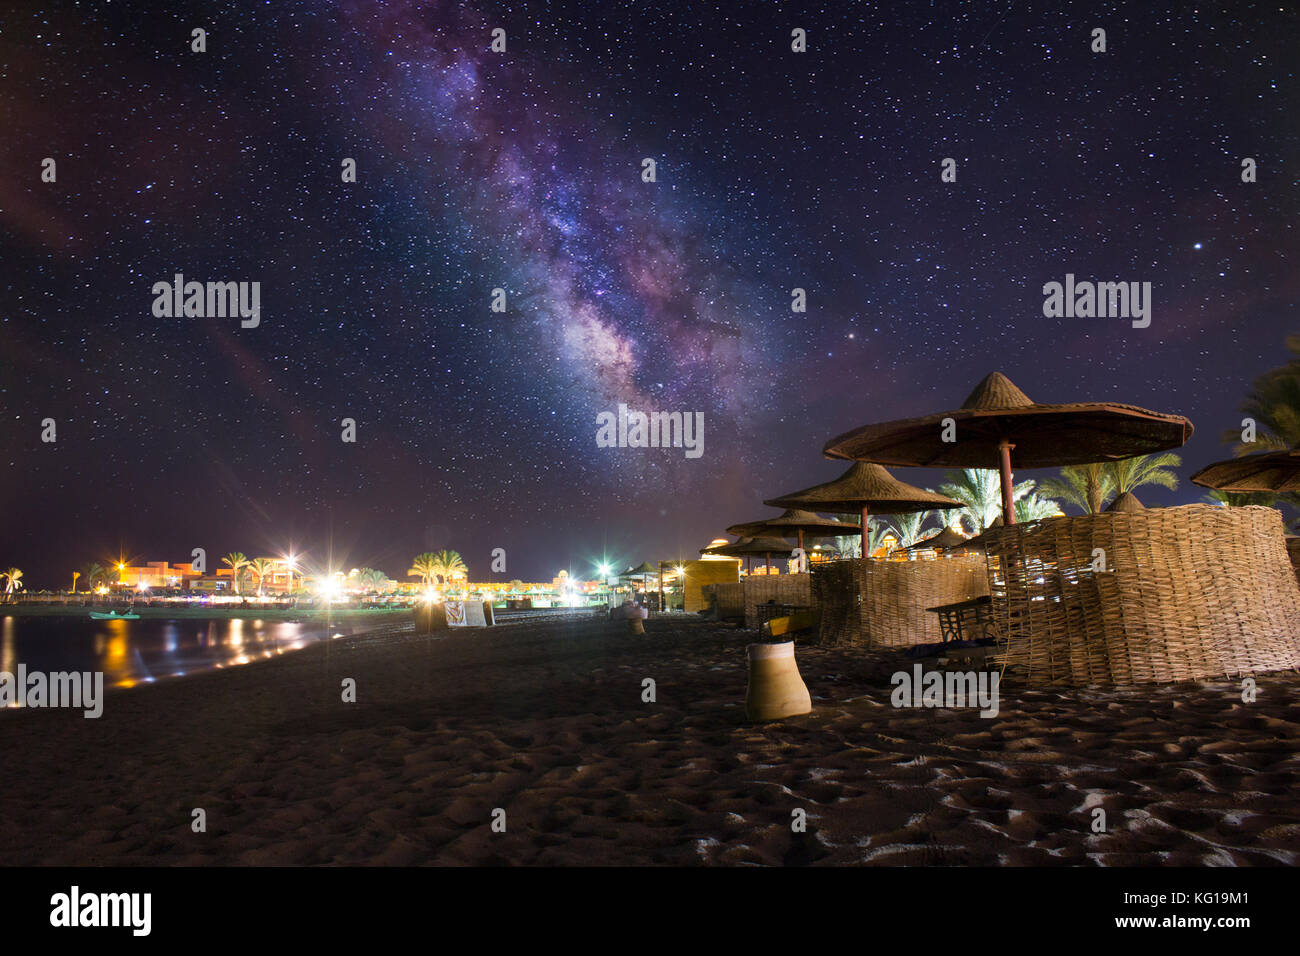 Fantastischen Sternenhimmel und die Milchstraße auf einem Strand in Marsa  Alam, Ägypten Stockfotografie - Alamy